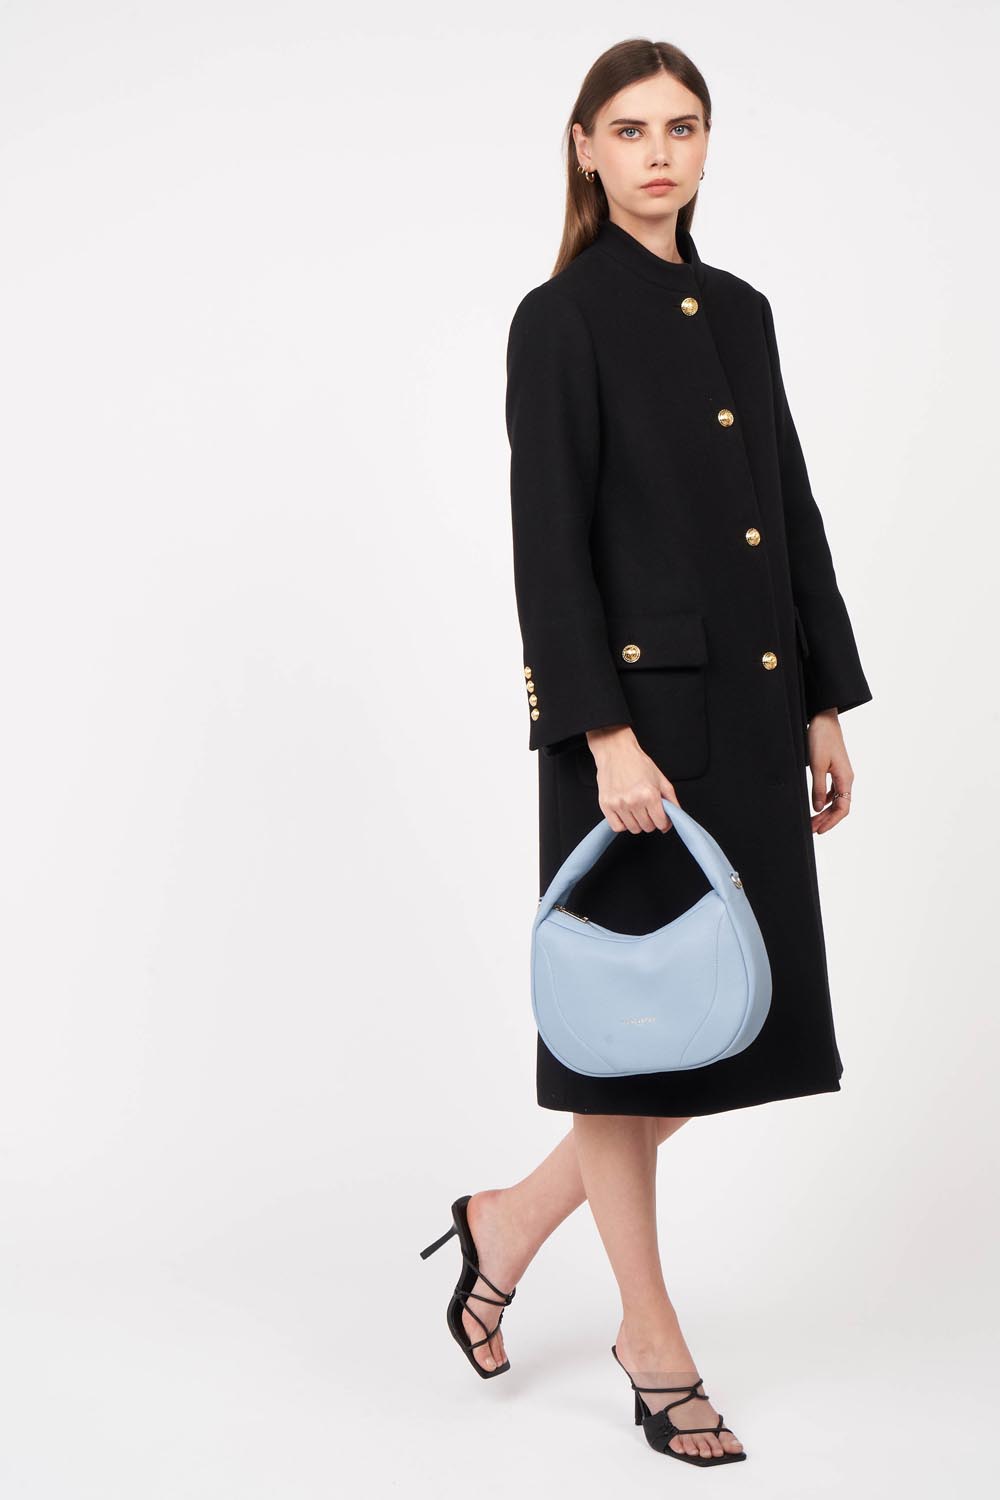 handbag - foulonné cerceau #couleur_bleu-ciel